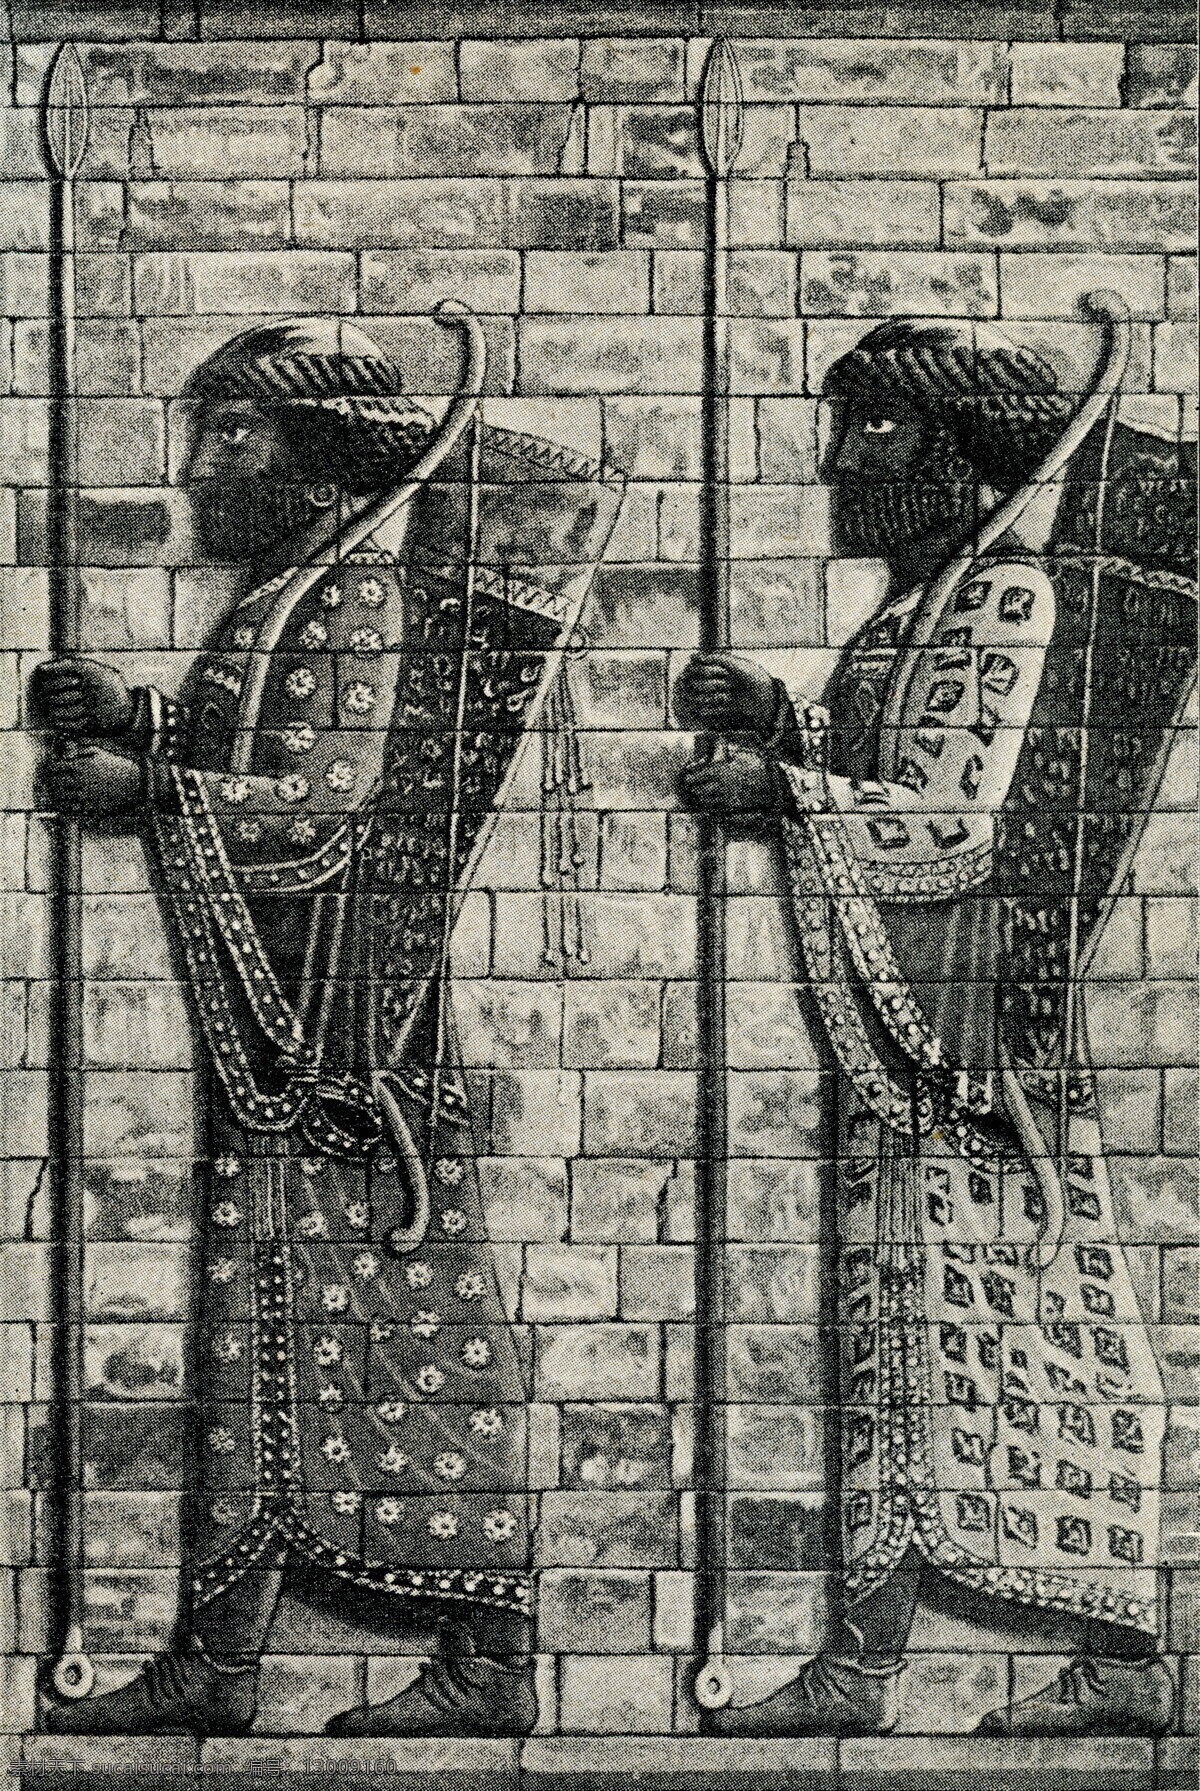 波斯人物浮雕 波斯 人物 浮雕 人物浮雕 人物雕塑 伊朗文化 波斯文化 传统图案 城市风光 环境家居 黑色